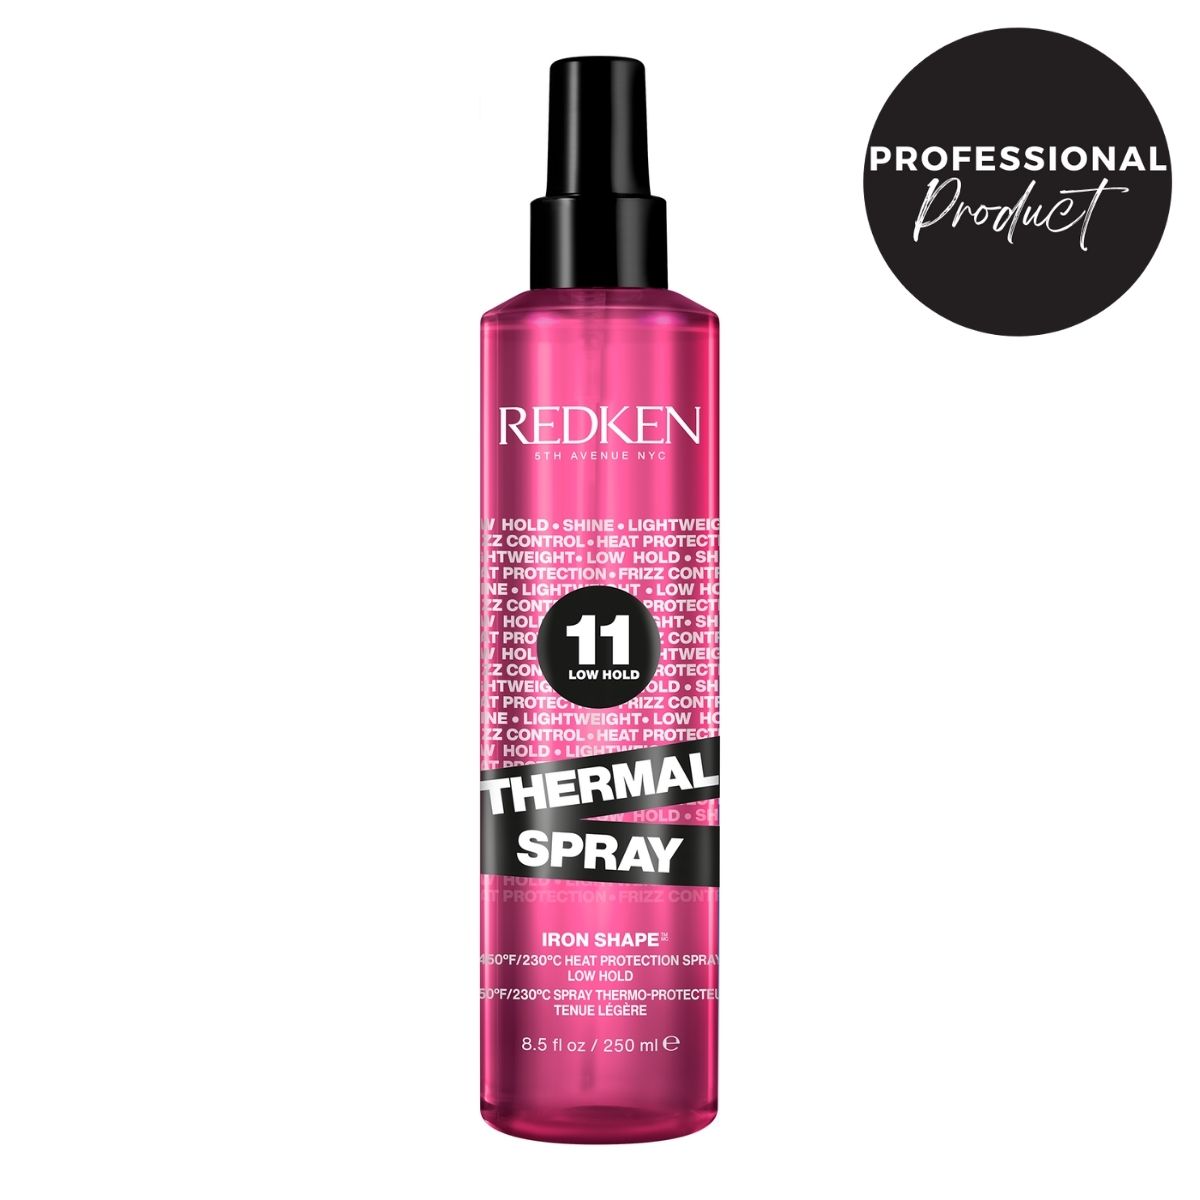 Redken - Redken Styling | Iron Shape Spray 250ml | Spray de protección térmica, ligero para peinados con herramientas de calor.